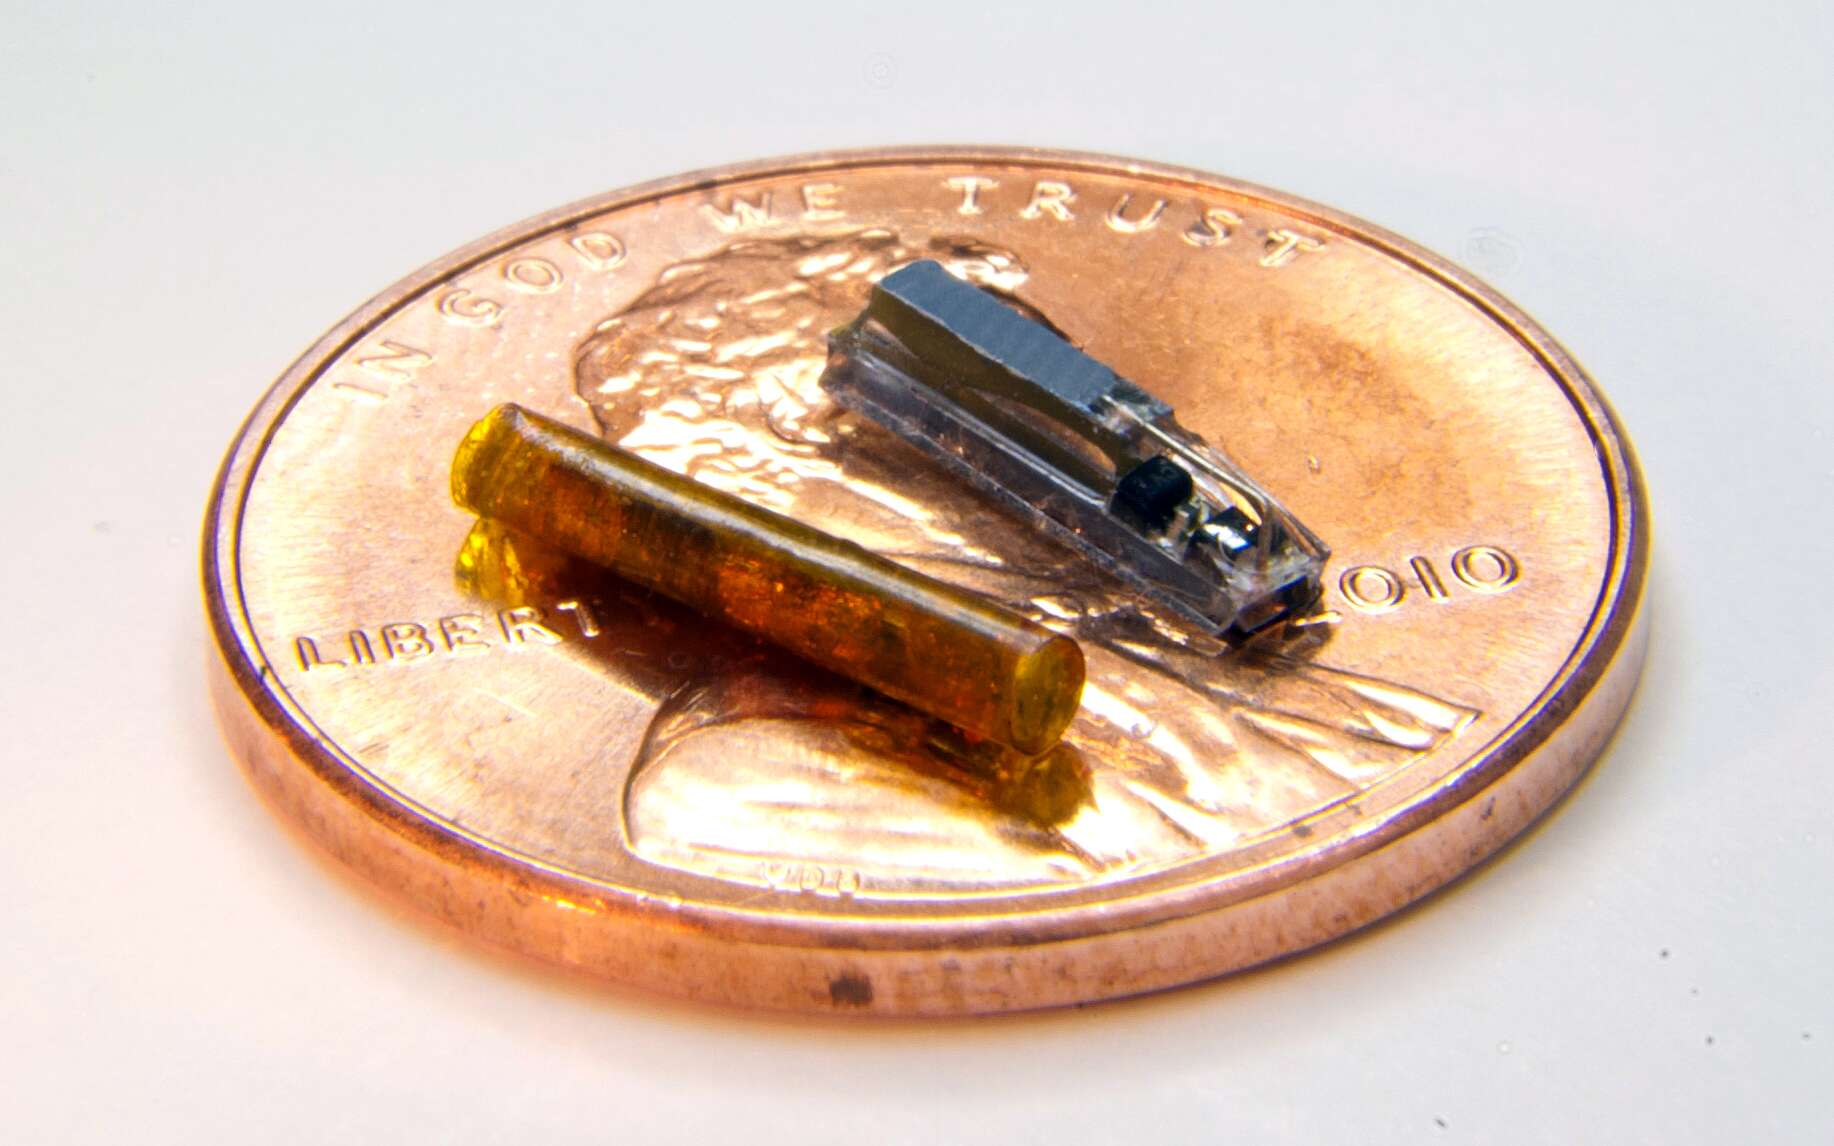 Les chercheurs ont créé et testé ce dispositif miniature, qui peut être implanté dans les tumeurs pour générer de l'oxygène, augmentant l'efficacité des radiations et de la chimiothérapie. Le dispositif (à droite) s'adapte à l'intérieur d'un tube (à gauche) qui peut ensuite être inséré dans une tumeur avec une aiguille à biopsie. © Birck Nanotechnology Center, Purdue University